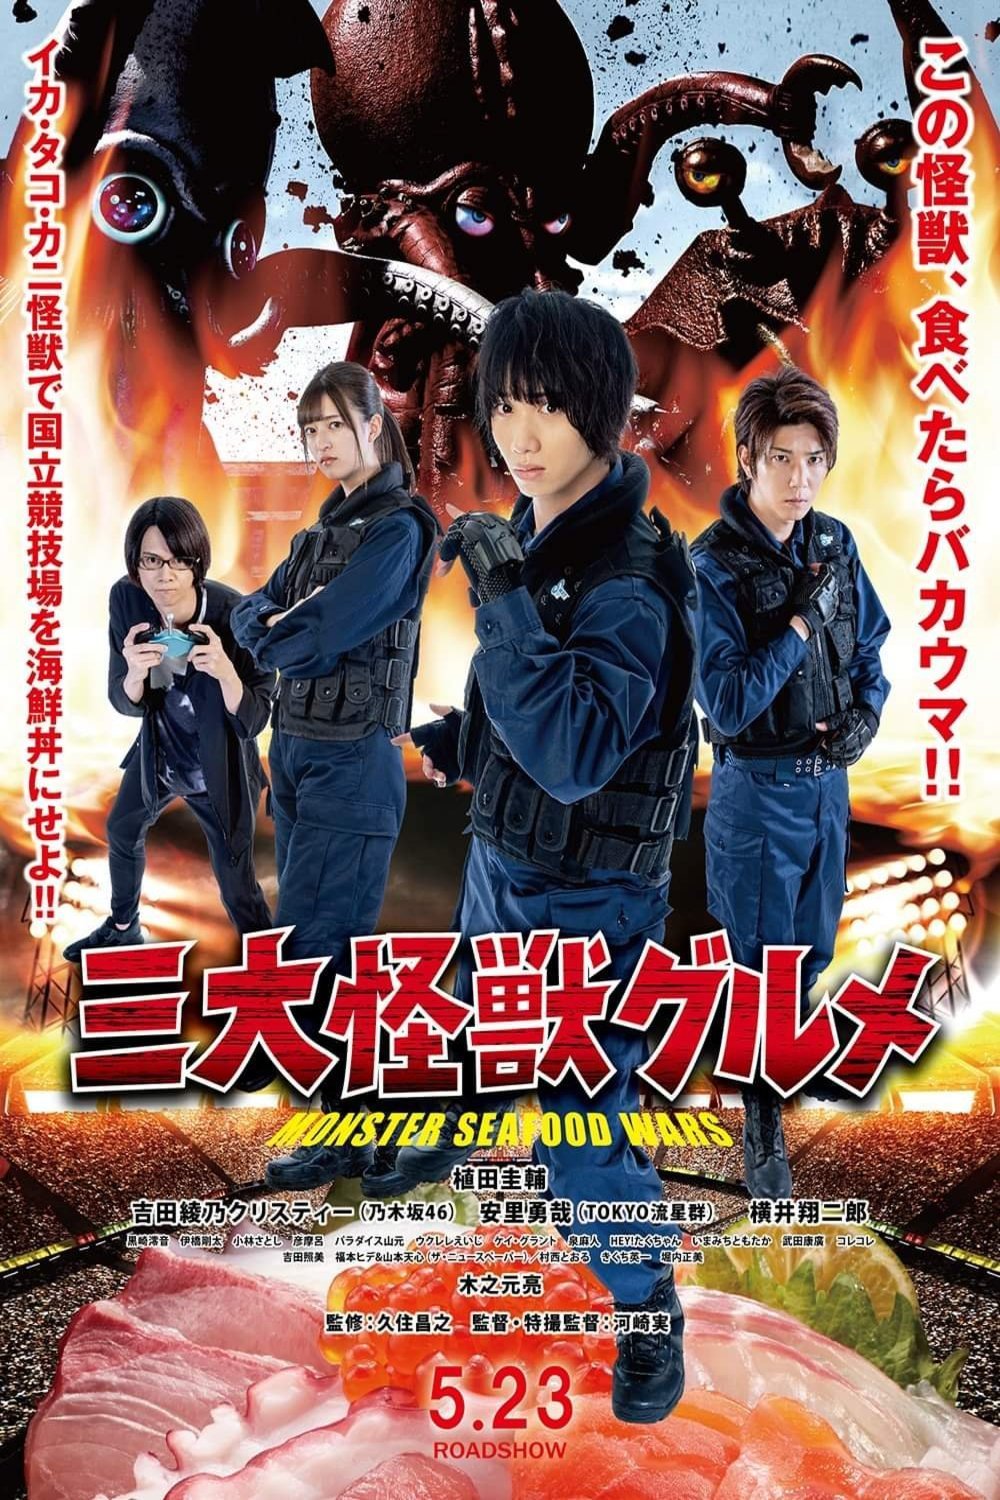 Japanese poster of the movie San Daikaijū Gurume